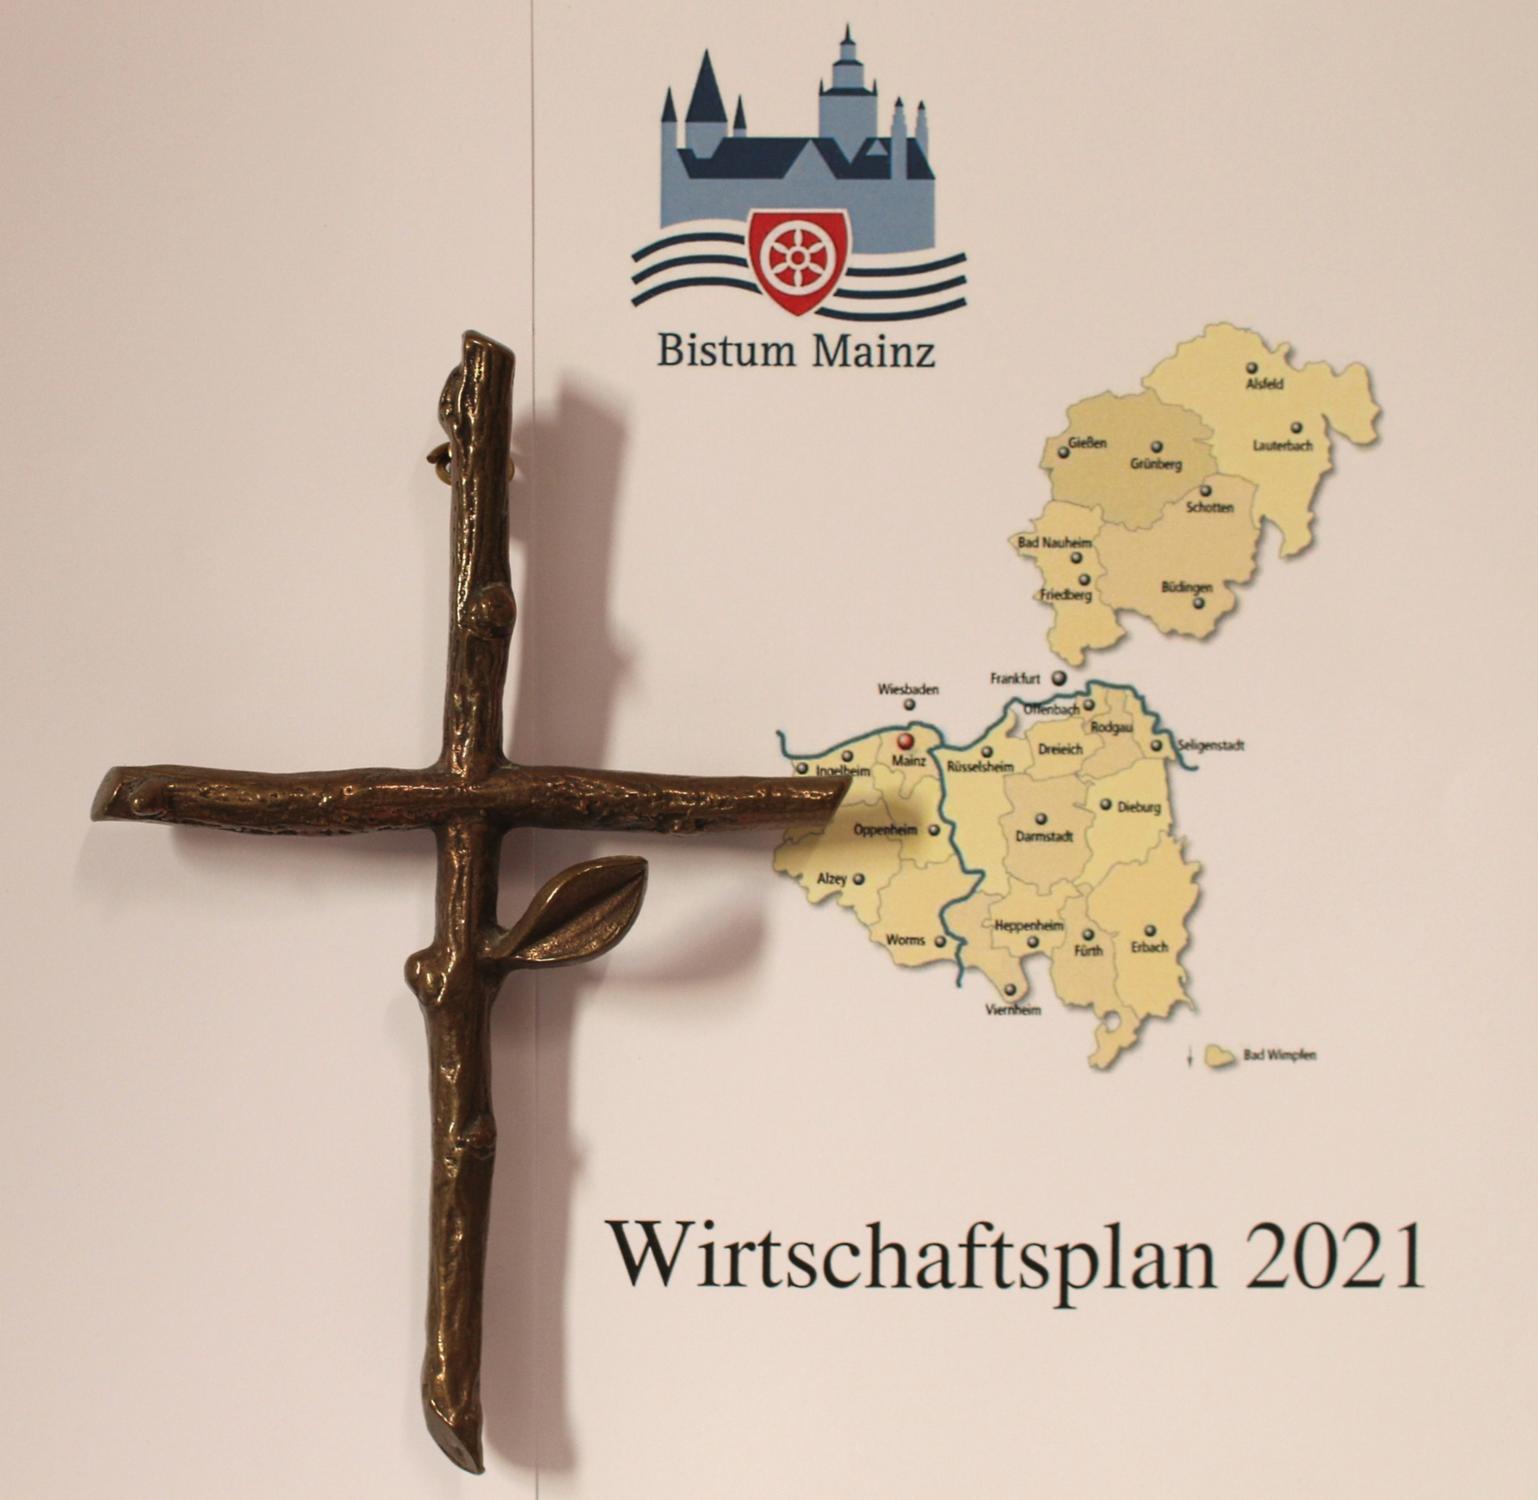 Wirtschafts- und Investitionsplan des Bistums Mainz für 2021 (c) Bistum Mainz / Blum